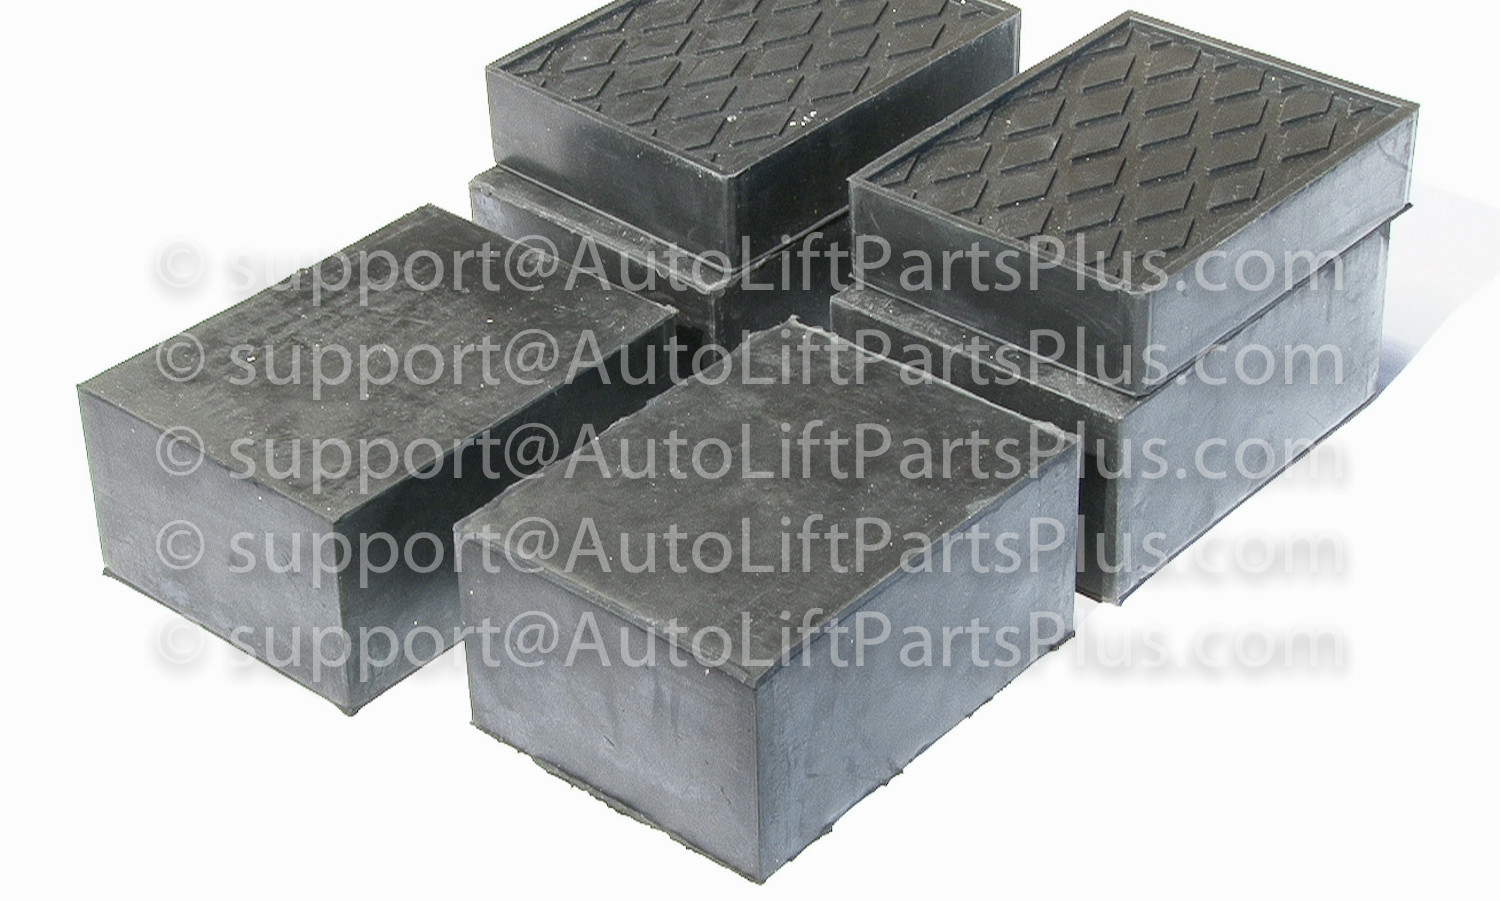 Set Of 6 Auto Lift Block Pad Solid Rubber Auto Lift Block Pad 